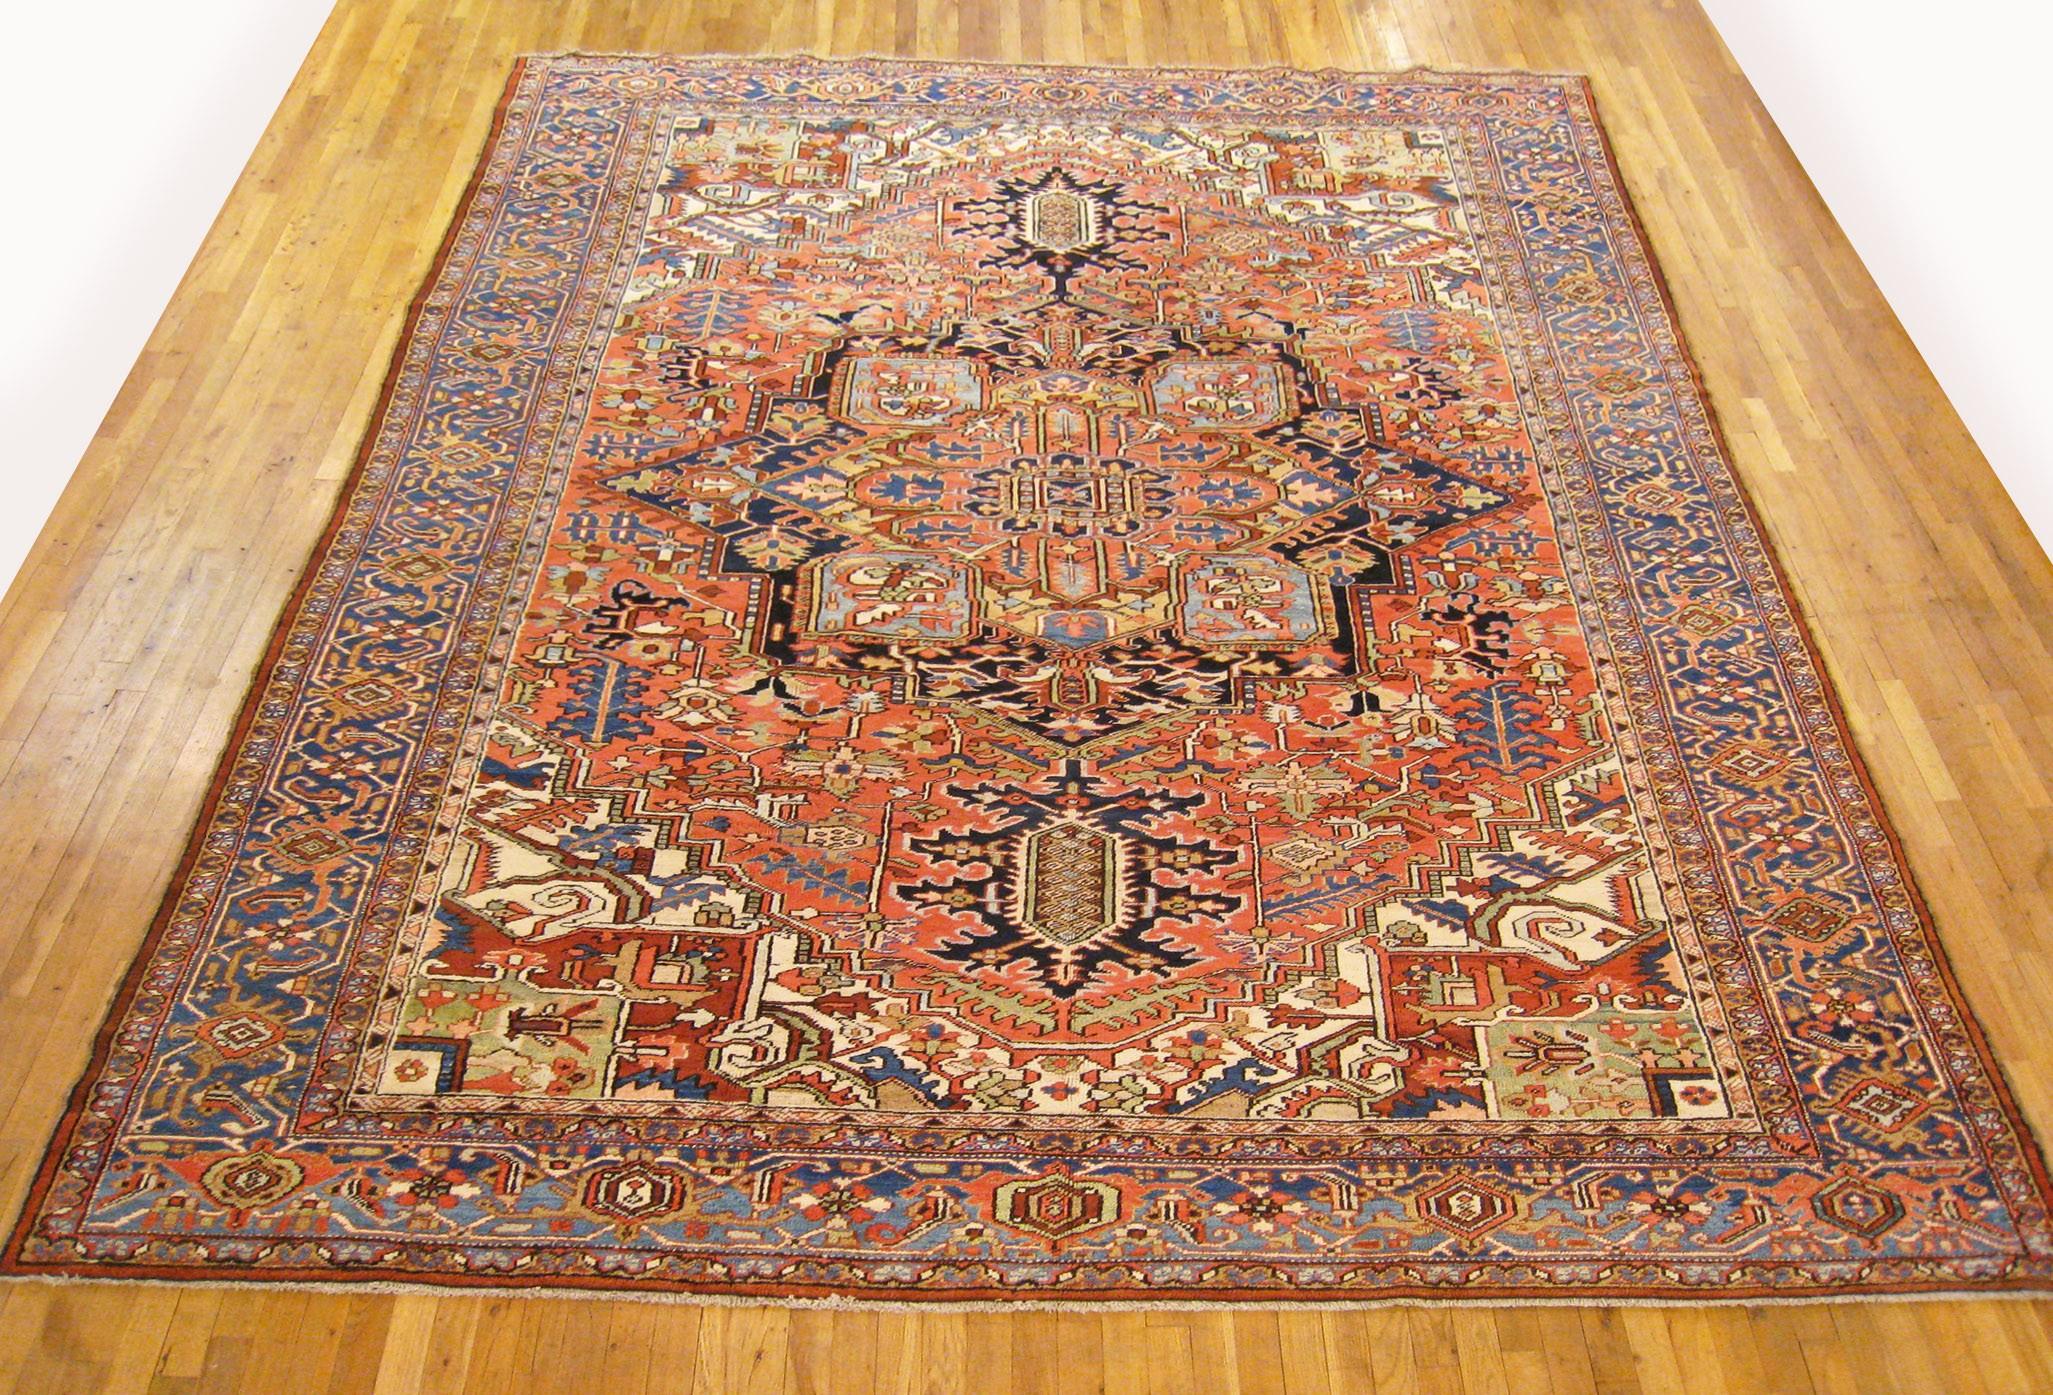 Antiker handgeknüpfter persischer Heriz- Orientalischer Teppich aus Heriz

Ein einzigartiger antiker persischer Heriz-Orientalteppich, handgeknüpft mit mitteldickem Wollflor. Mit einem zentralen Medaillon-Motiv auf dem korallenroten Hauptfeld und